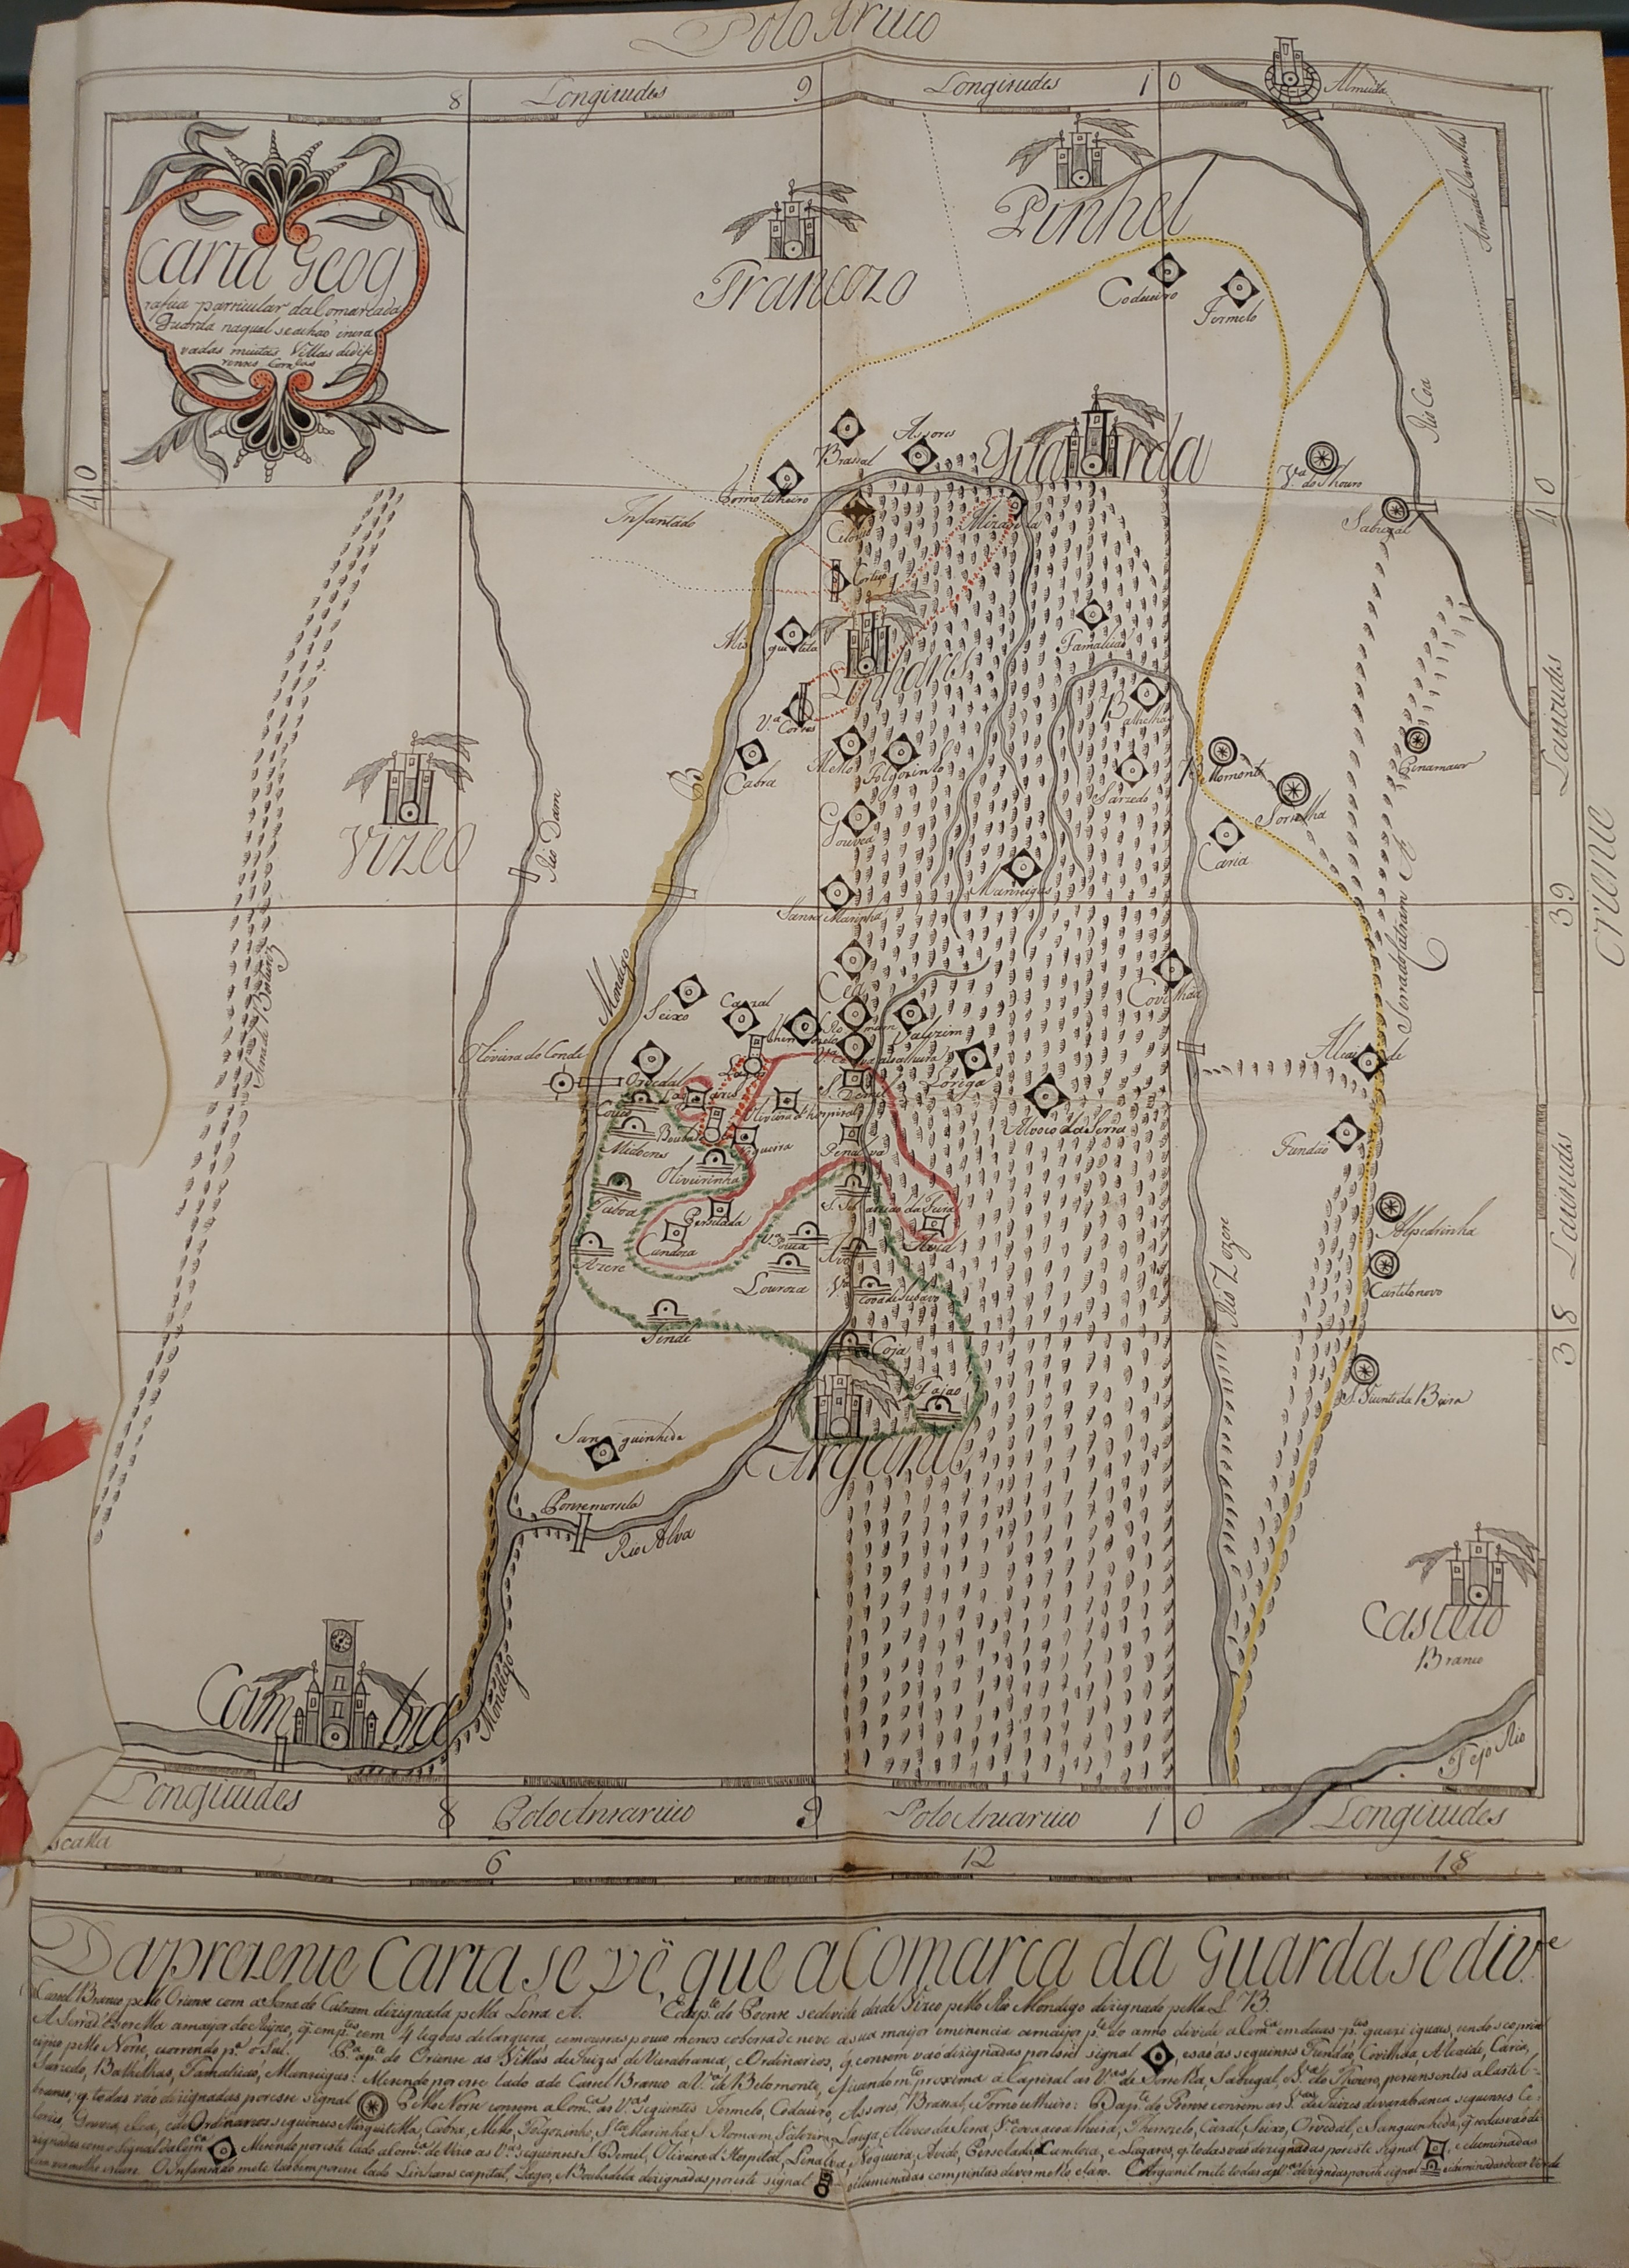 Mapa da Comarca da Guarda (1793). Cota: Secção I/II, cx. 150, mç. 102, doc. 46